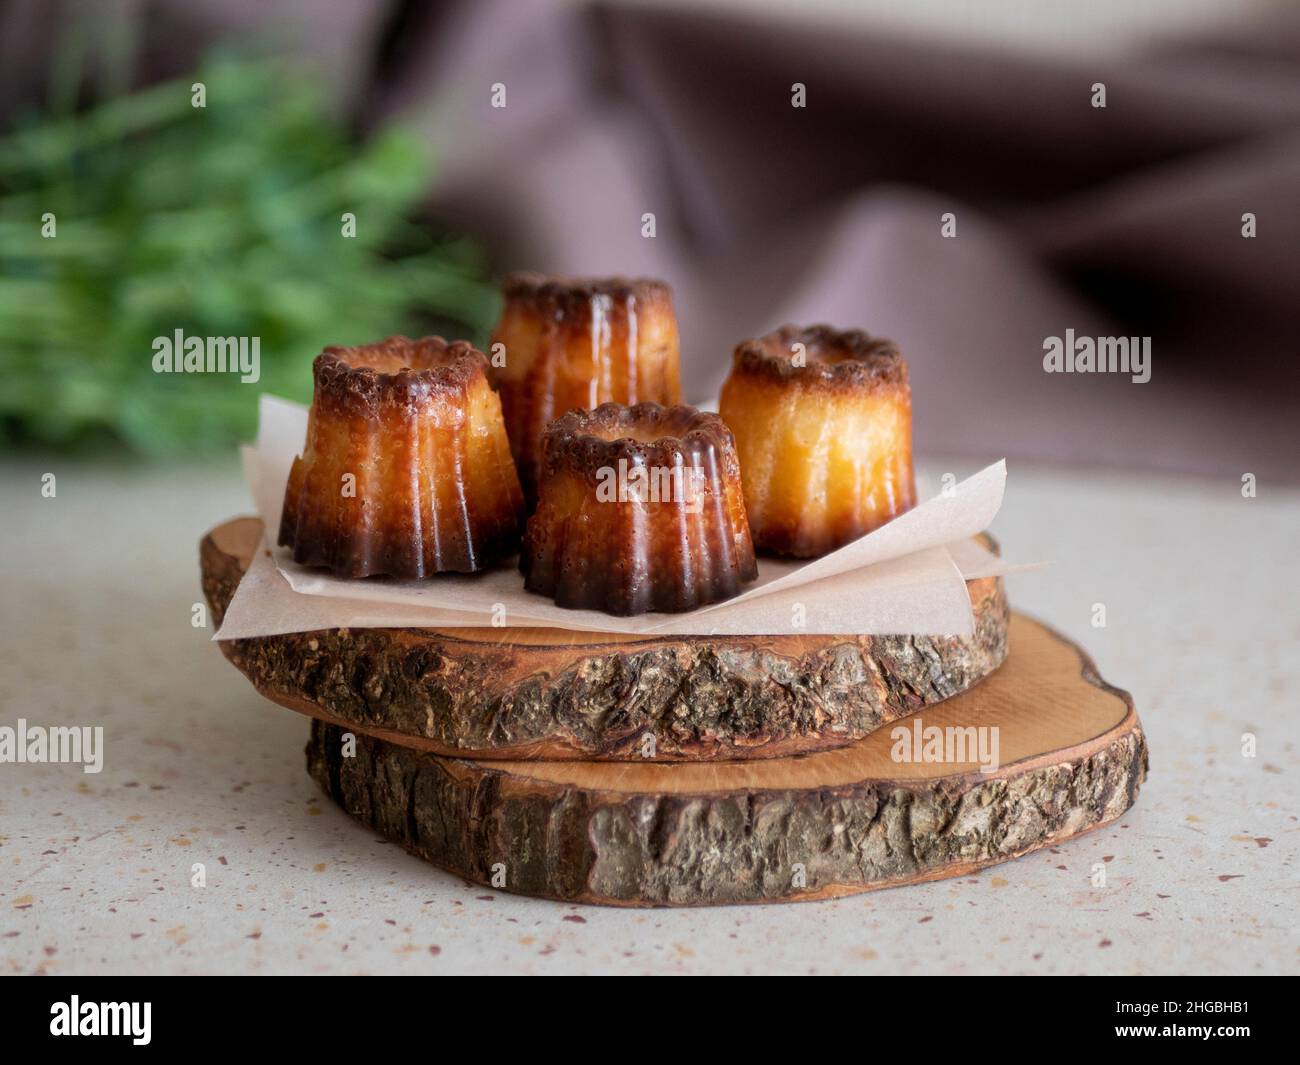 Mini-Kanelen mit goldener karamellisierter Schale auf den Baumquerschnitten, selektiver Fokus. Köstliches französisches Gebäck Stockfoto